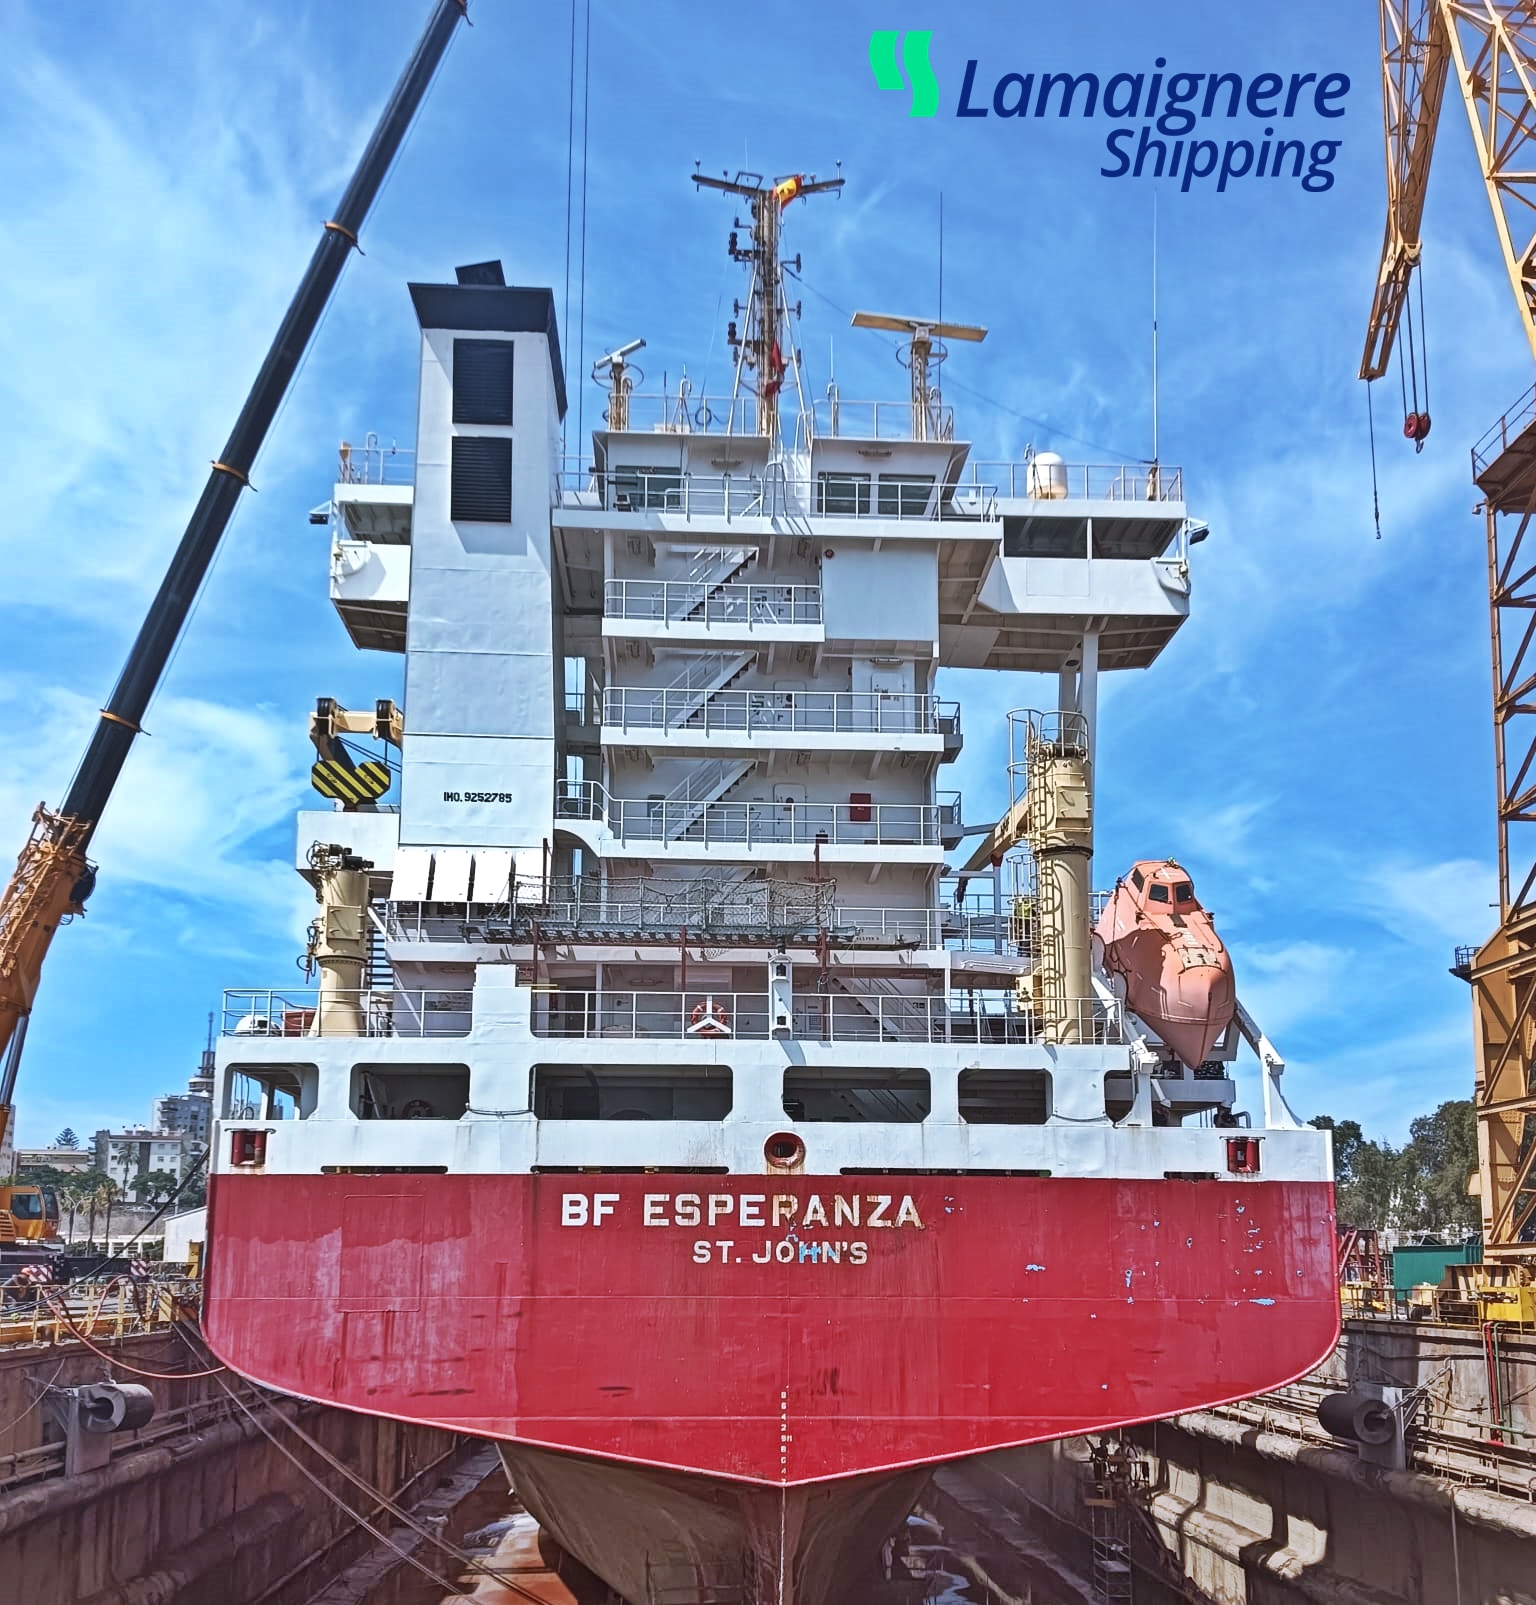 Lamaignere Shipping provides shipping agency services to the cargo ship “BF Esperanza” in Navantia, Cadiz